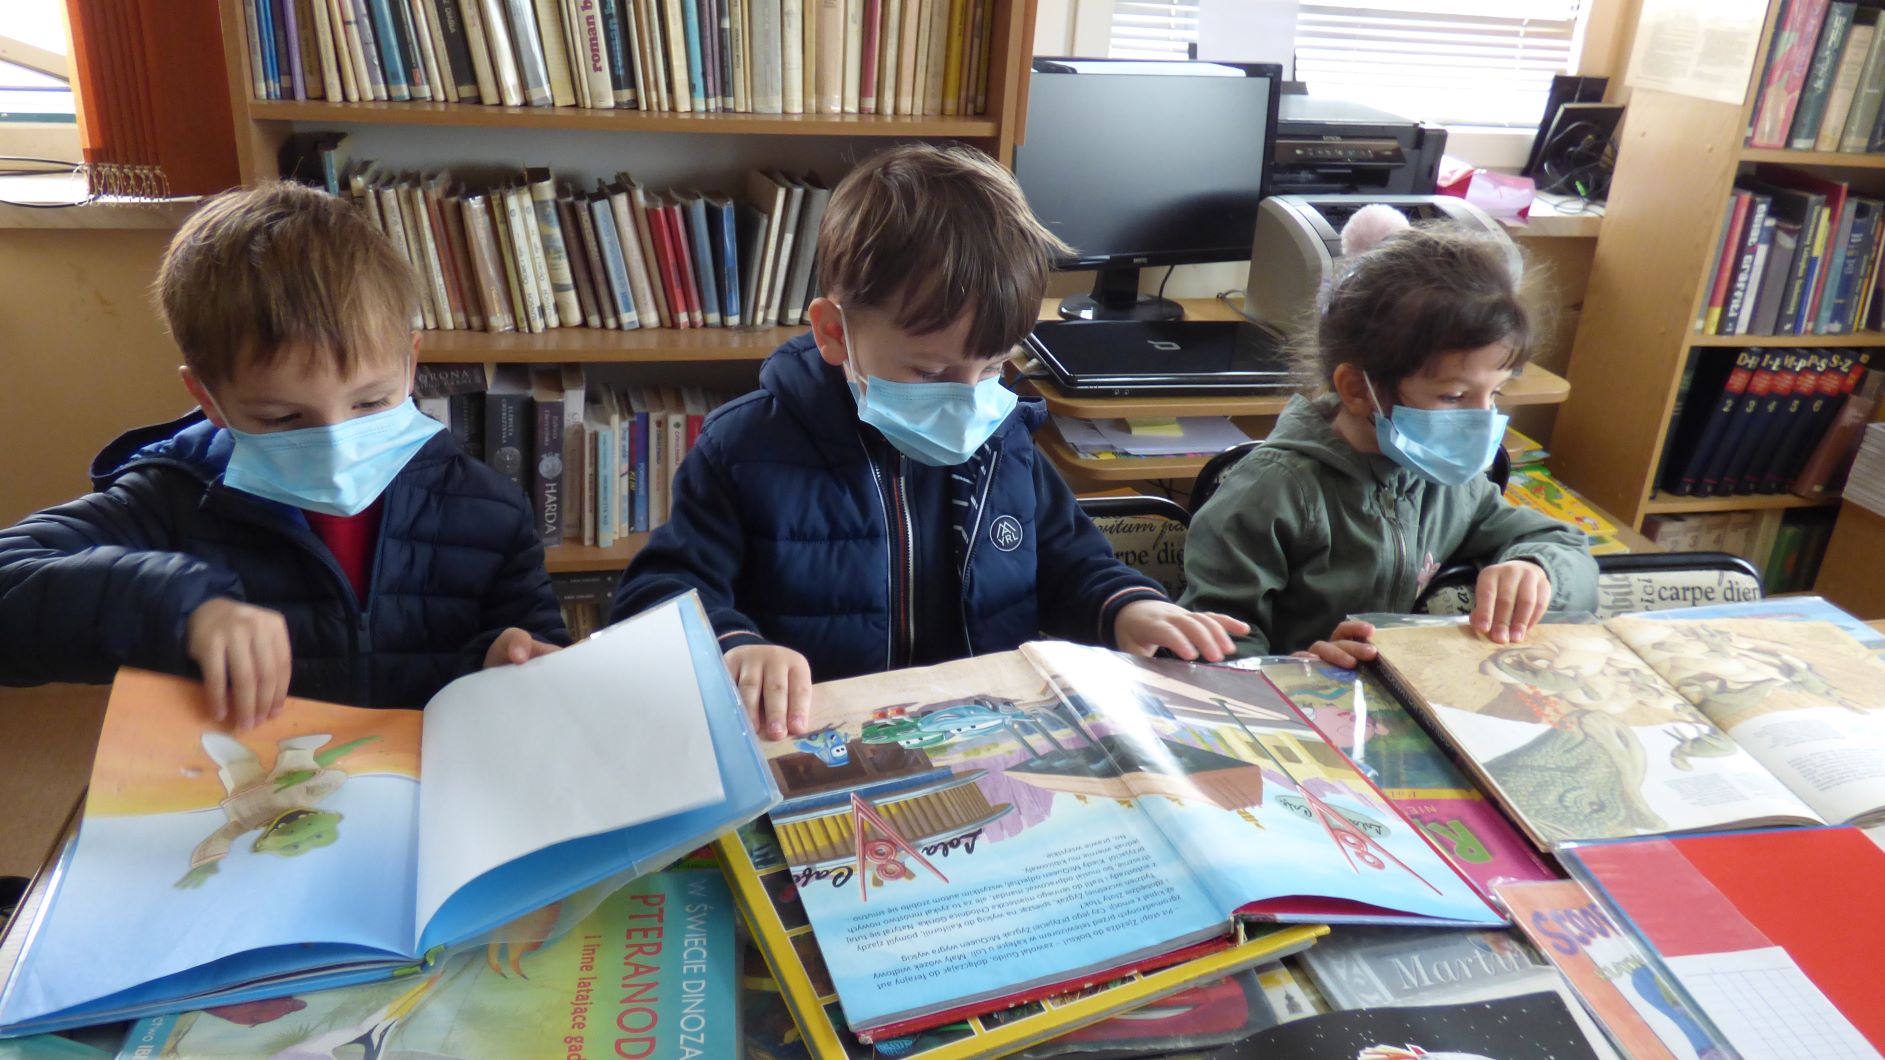 Troje dzieci stoi przy stole i ogląda otwarte książki dla dzieci.